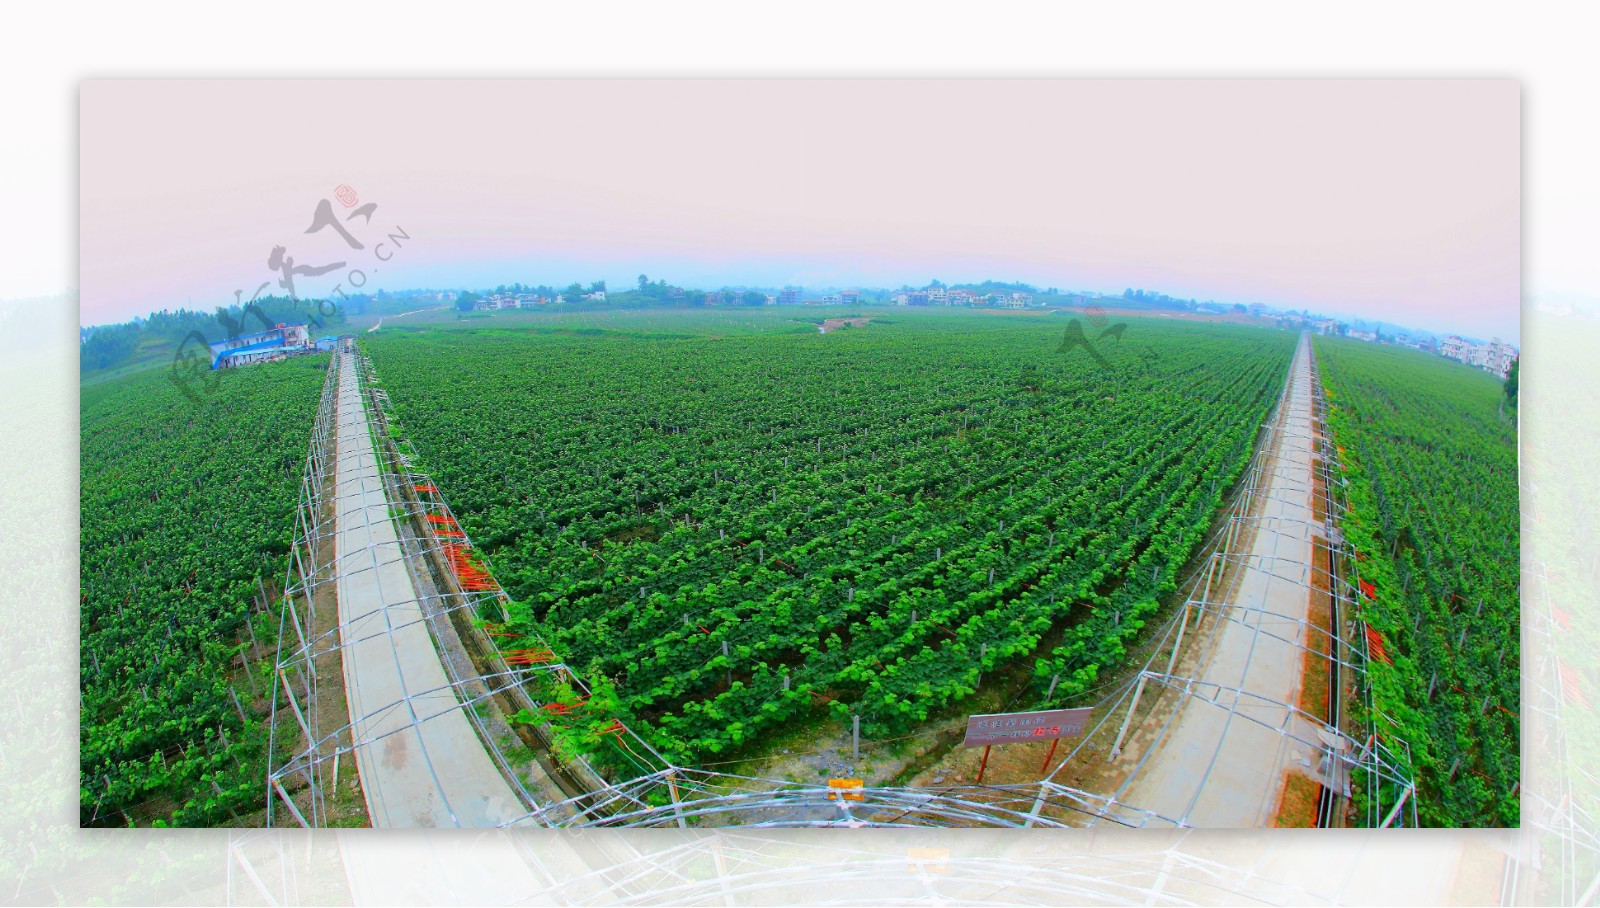 葡萄产业基地全景图片